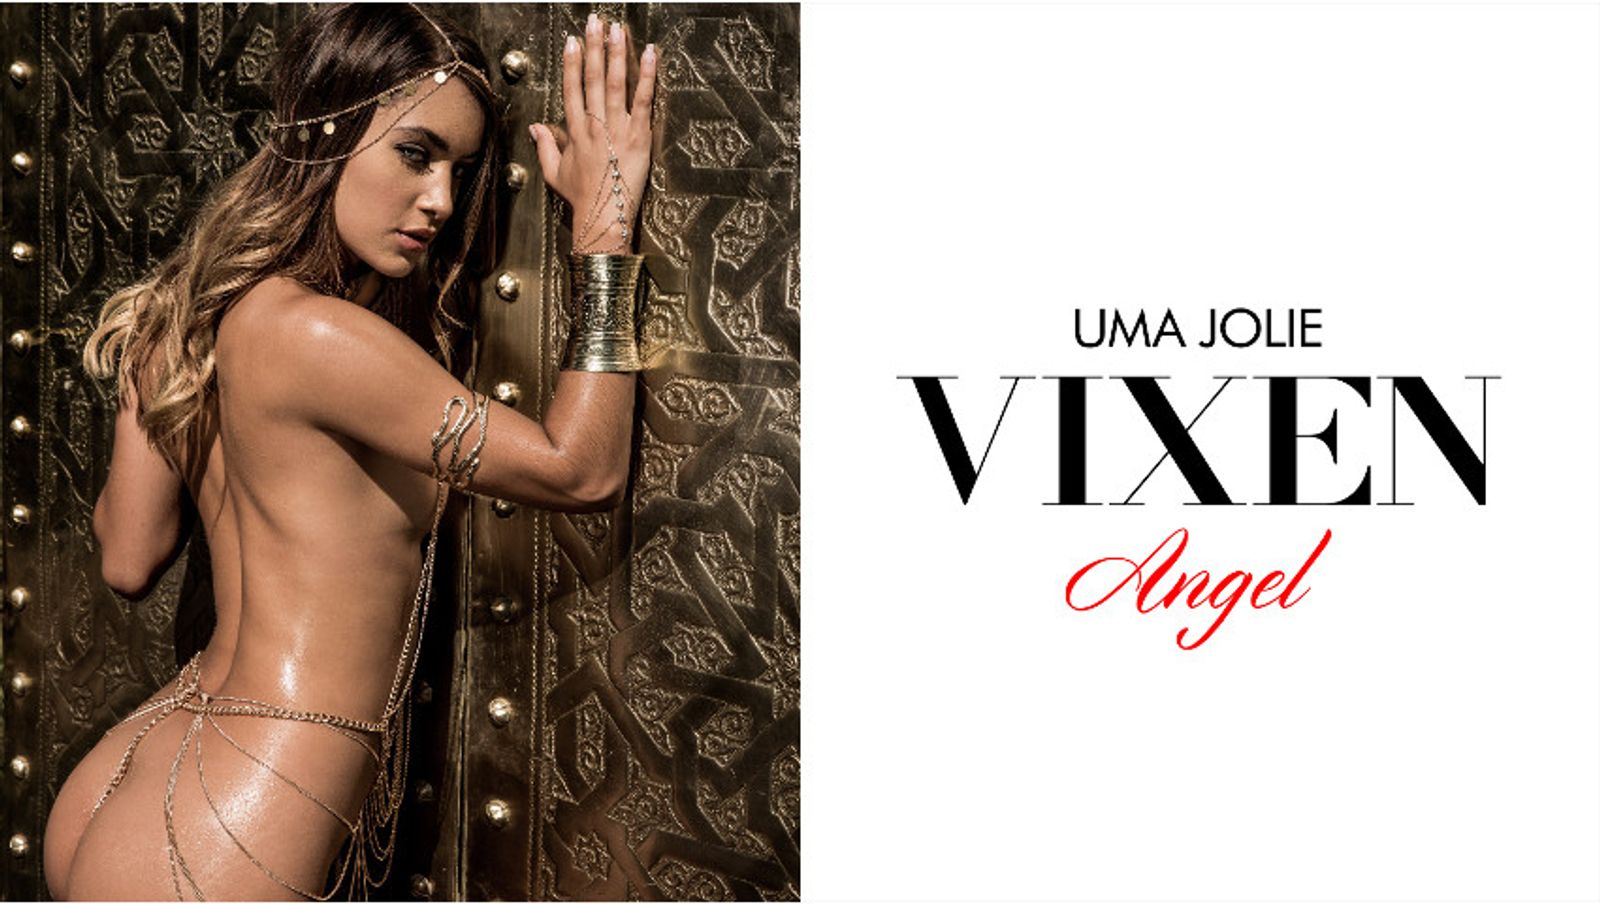 Uma Jolie Named September 2017 Vixen Angel